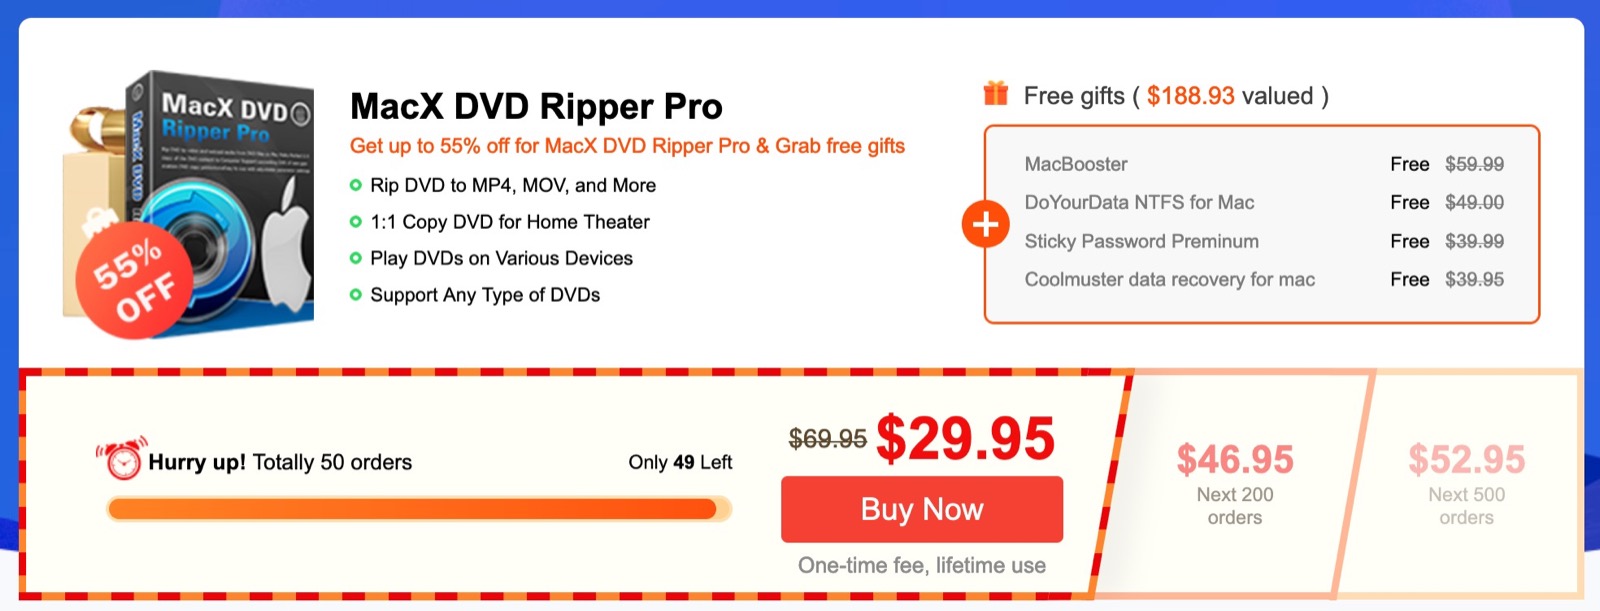 MacX DVD Ripper Pro in sconto fino al 55% per Natale